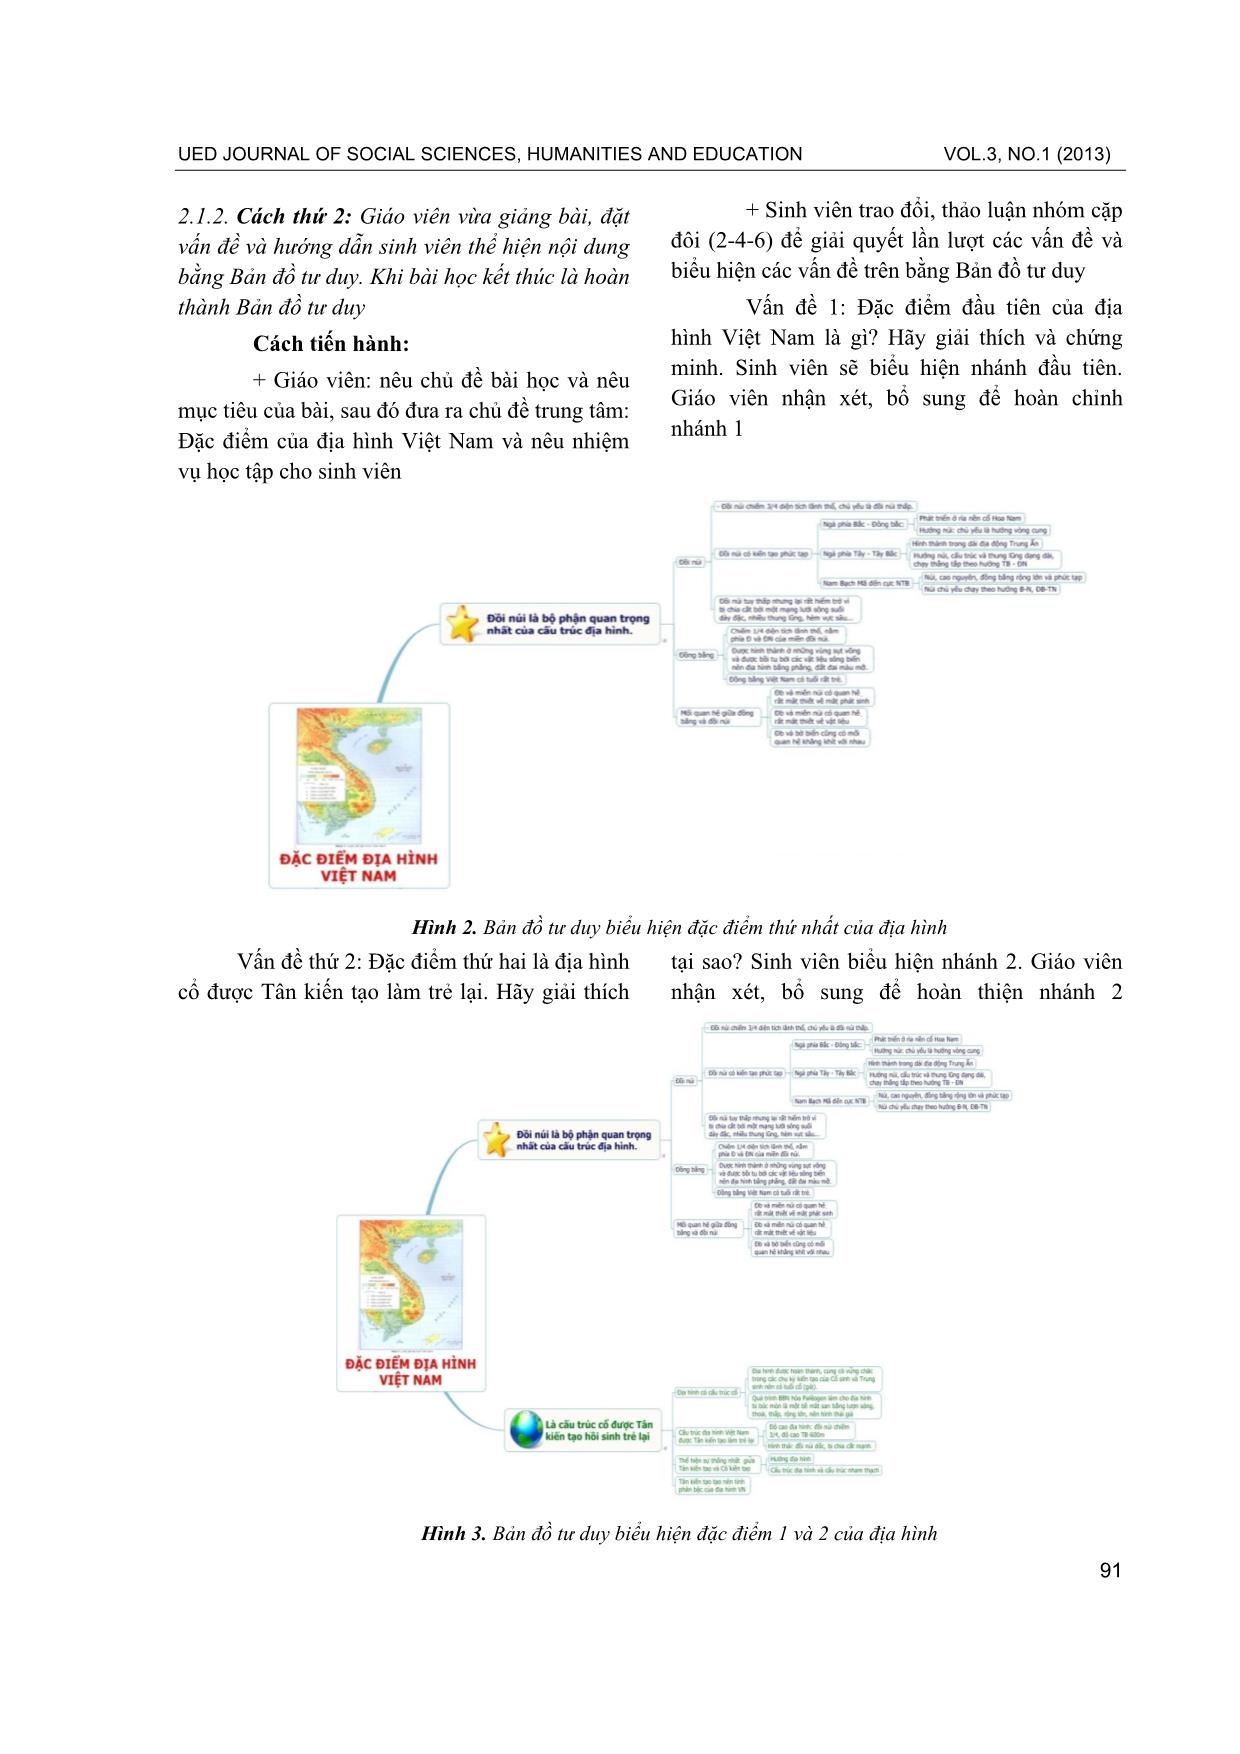 Phương pháp sử dụng bản đồ tư duy trong dạy học các học phần địa lí tự nhiên Việt Nam ở khoa Địa lí, trường đại học sư phạm - ĐHĐN trang 3